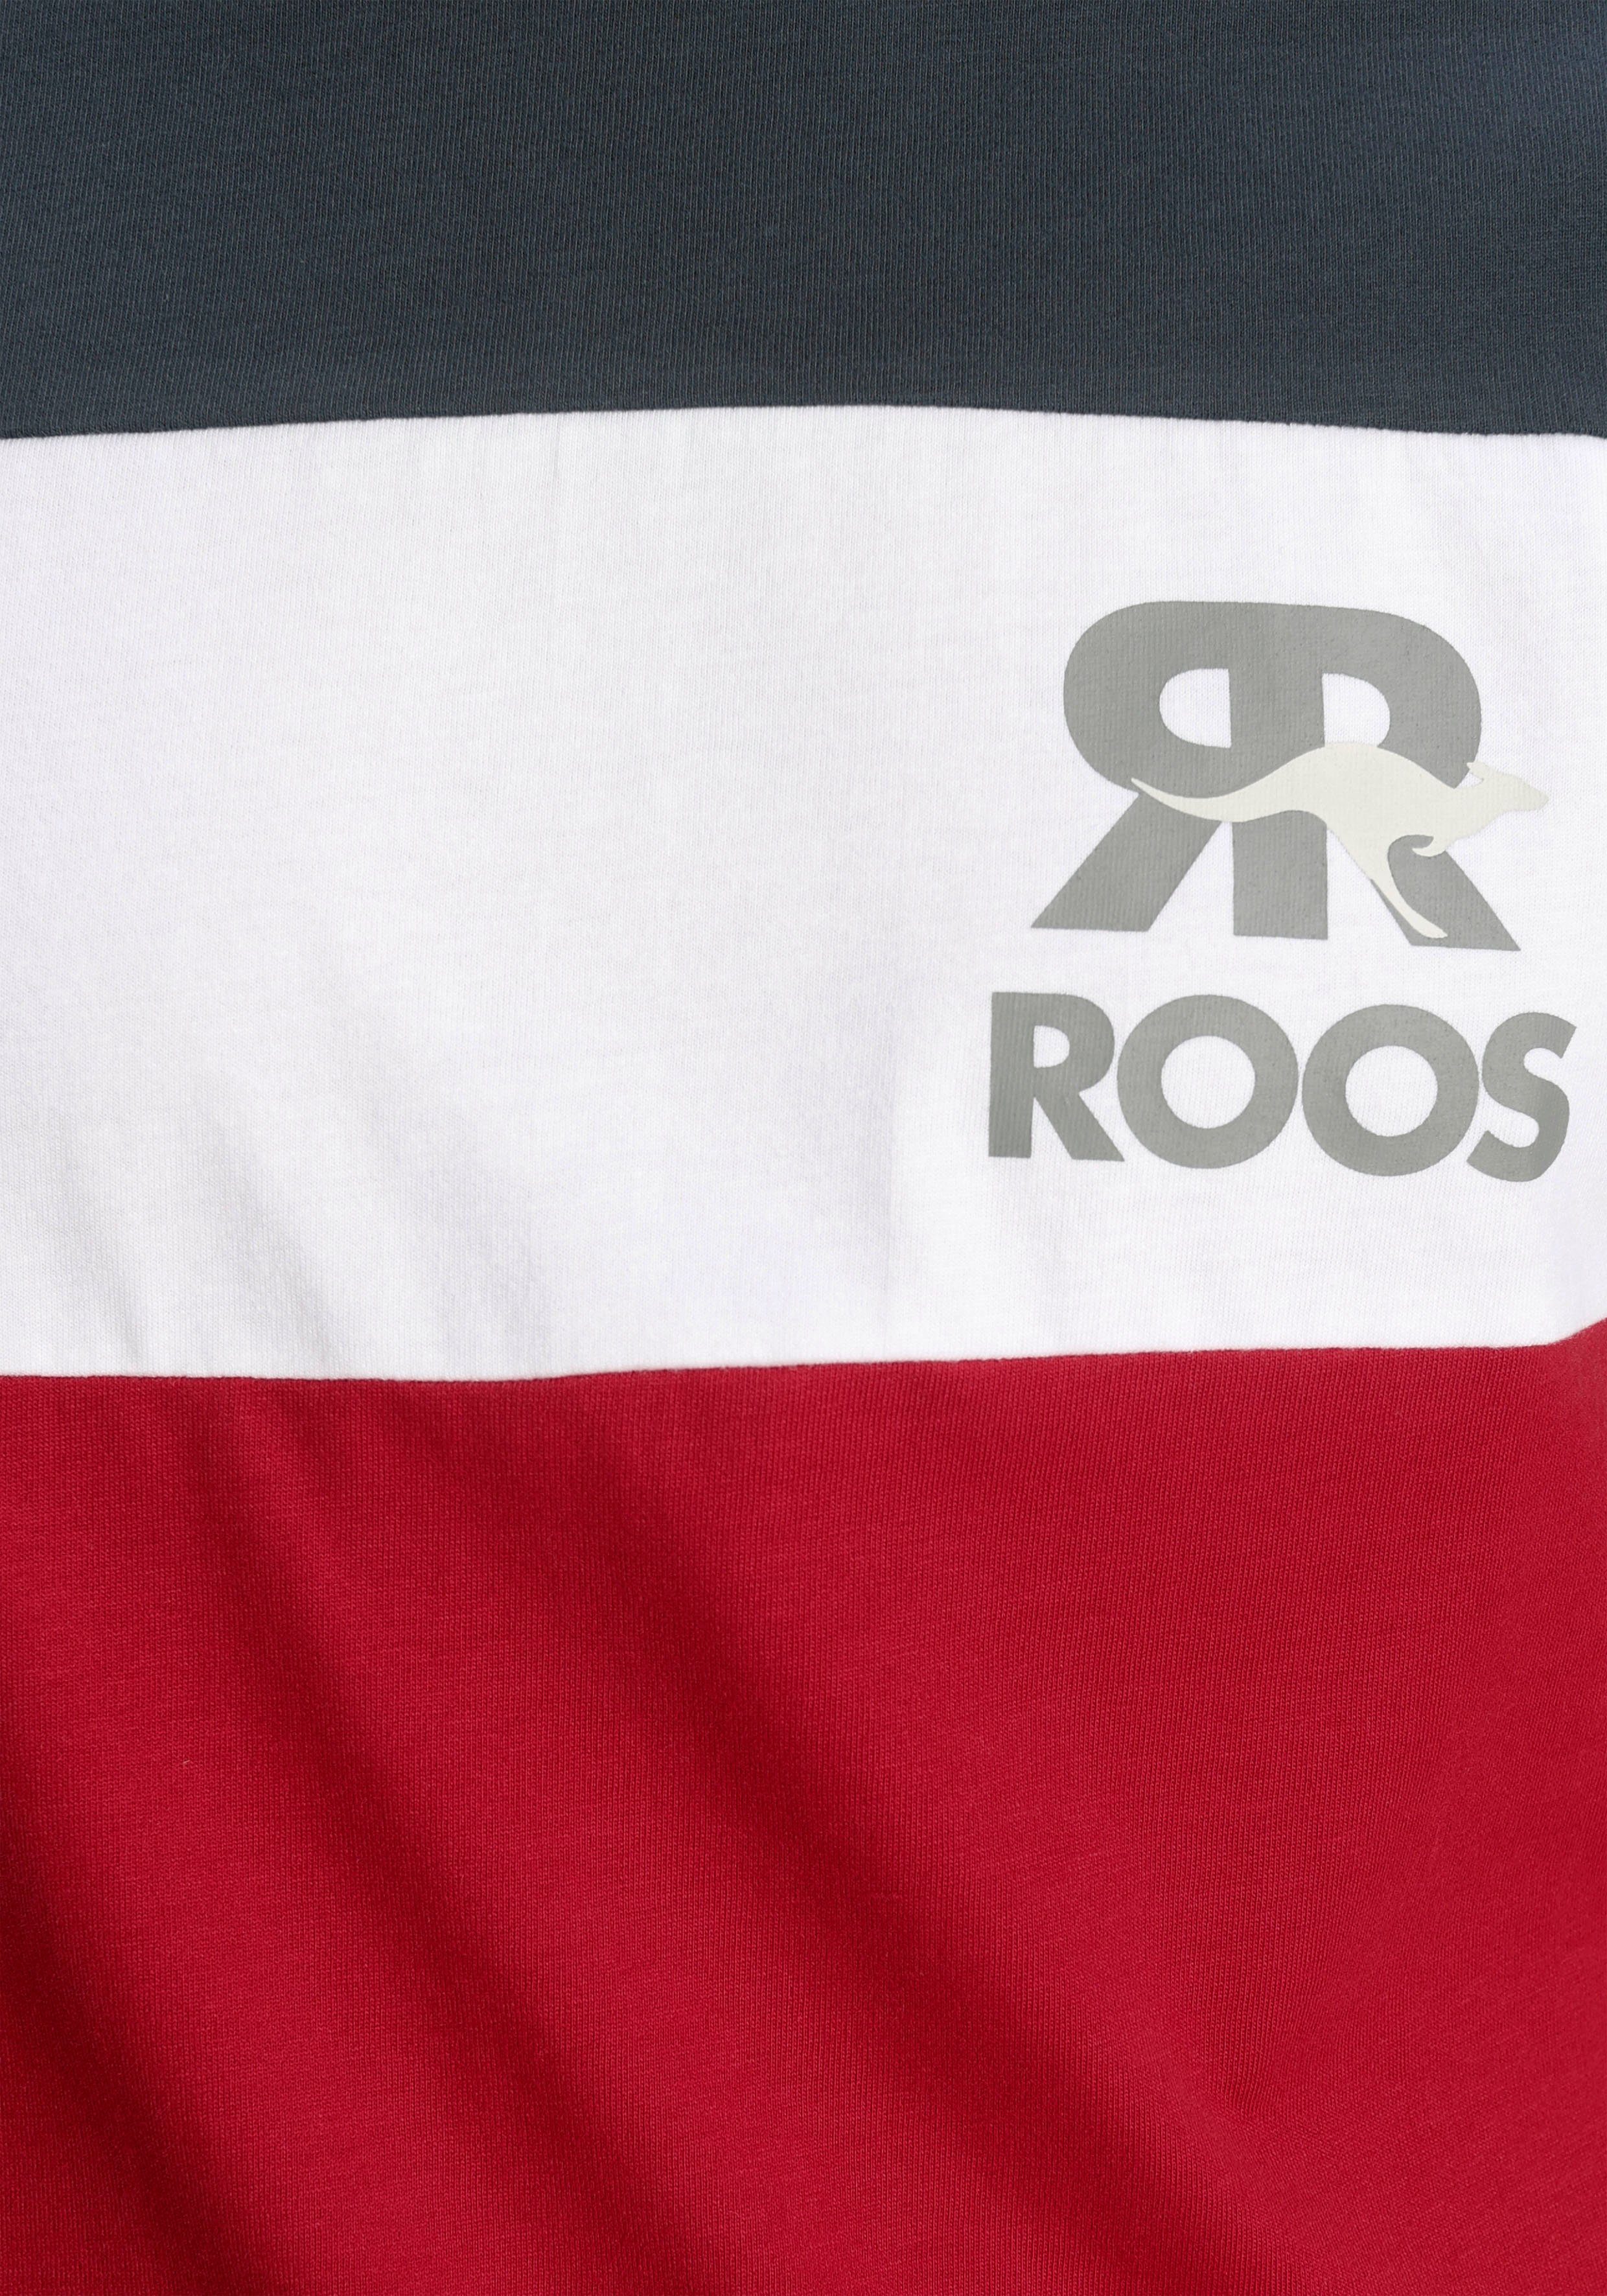 rot-navy-mehrfarbig T-Shirt KangaROOS